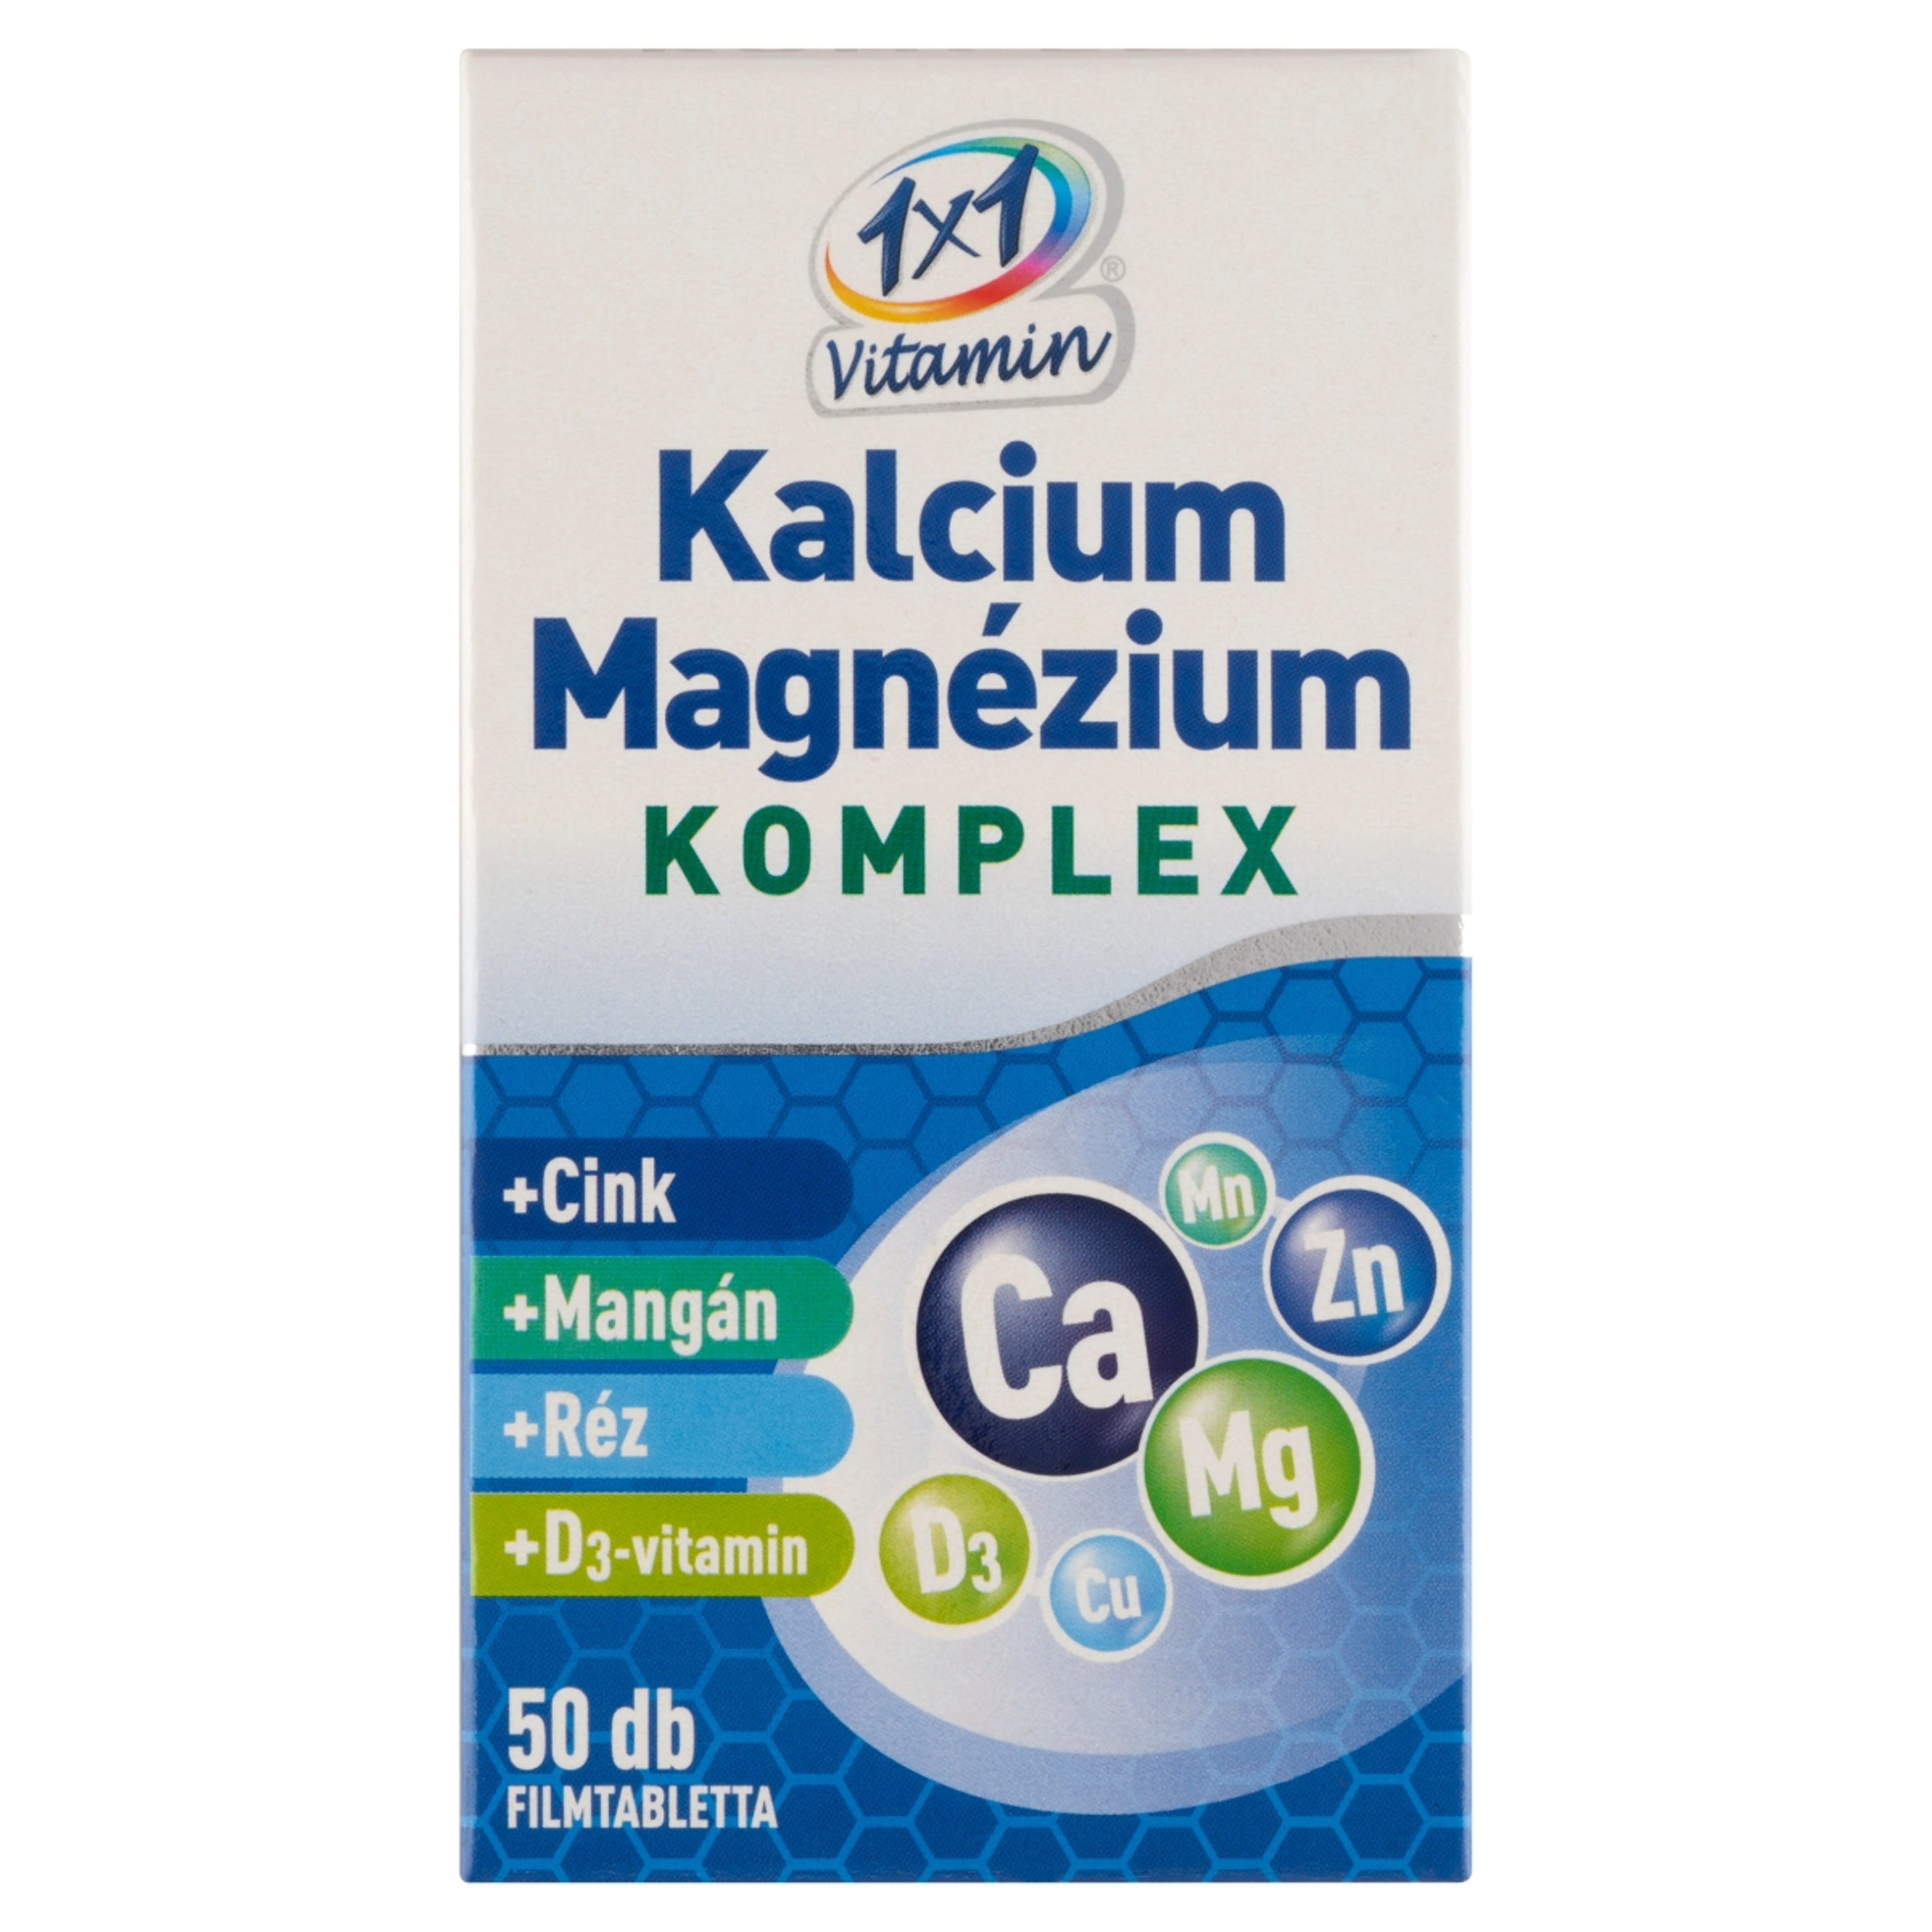 1x1 Vitamin Kalcium + Magnézium Komplex filmtabletta - 50 db